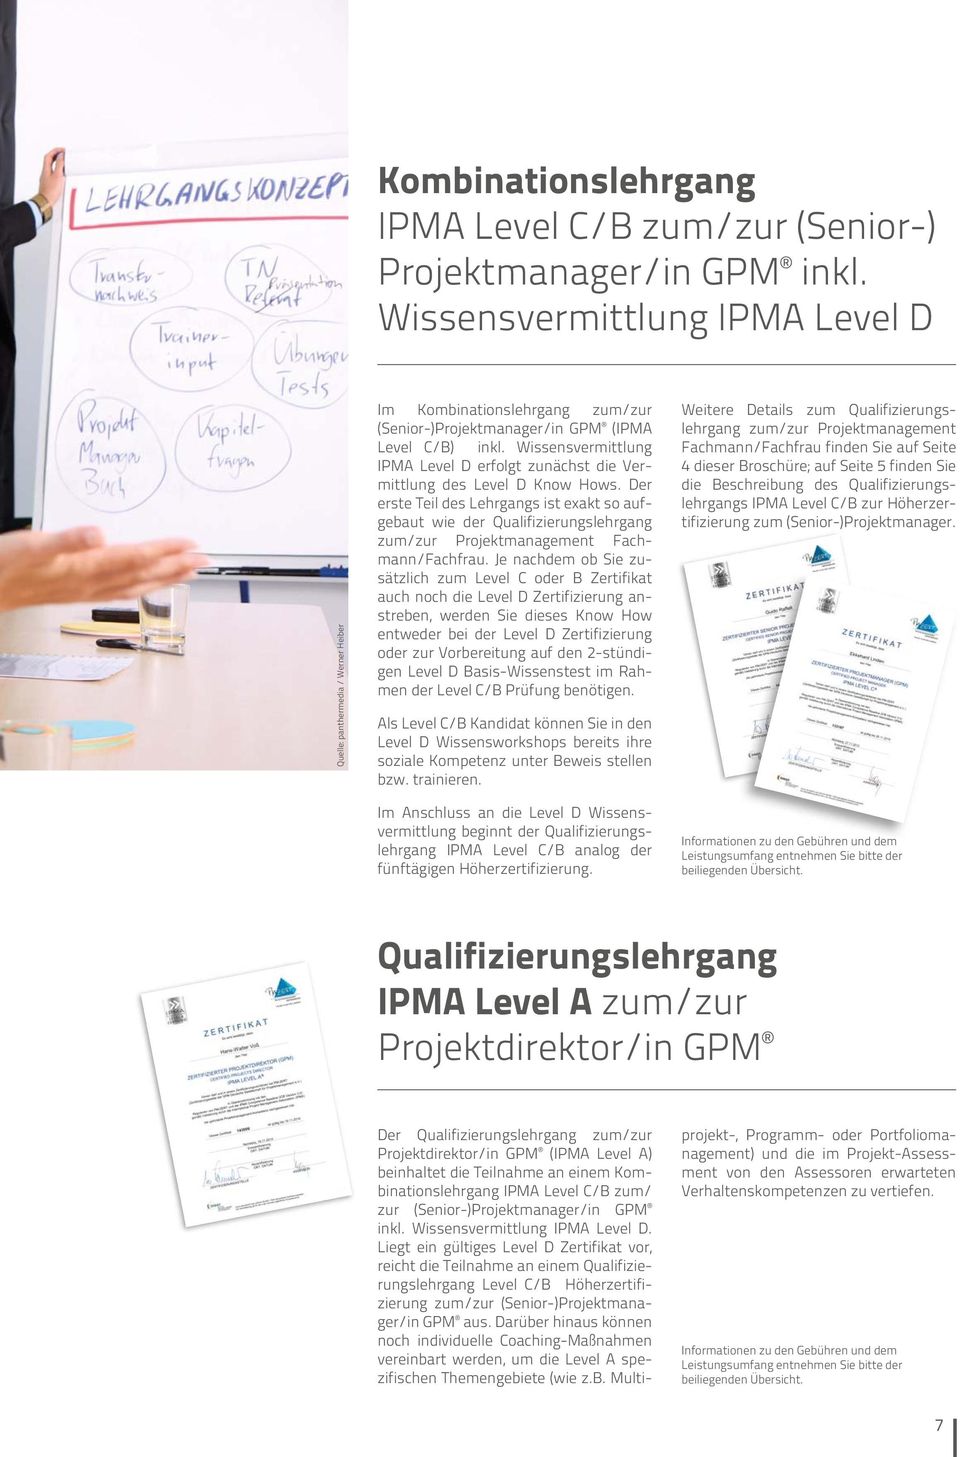 Wissensvermittlung IPMA Level D erfolgt zunächst die Vermittlung des Level D Know Hows.